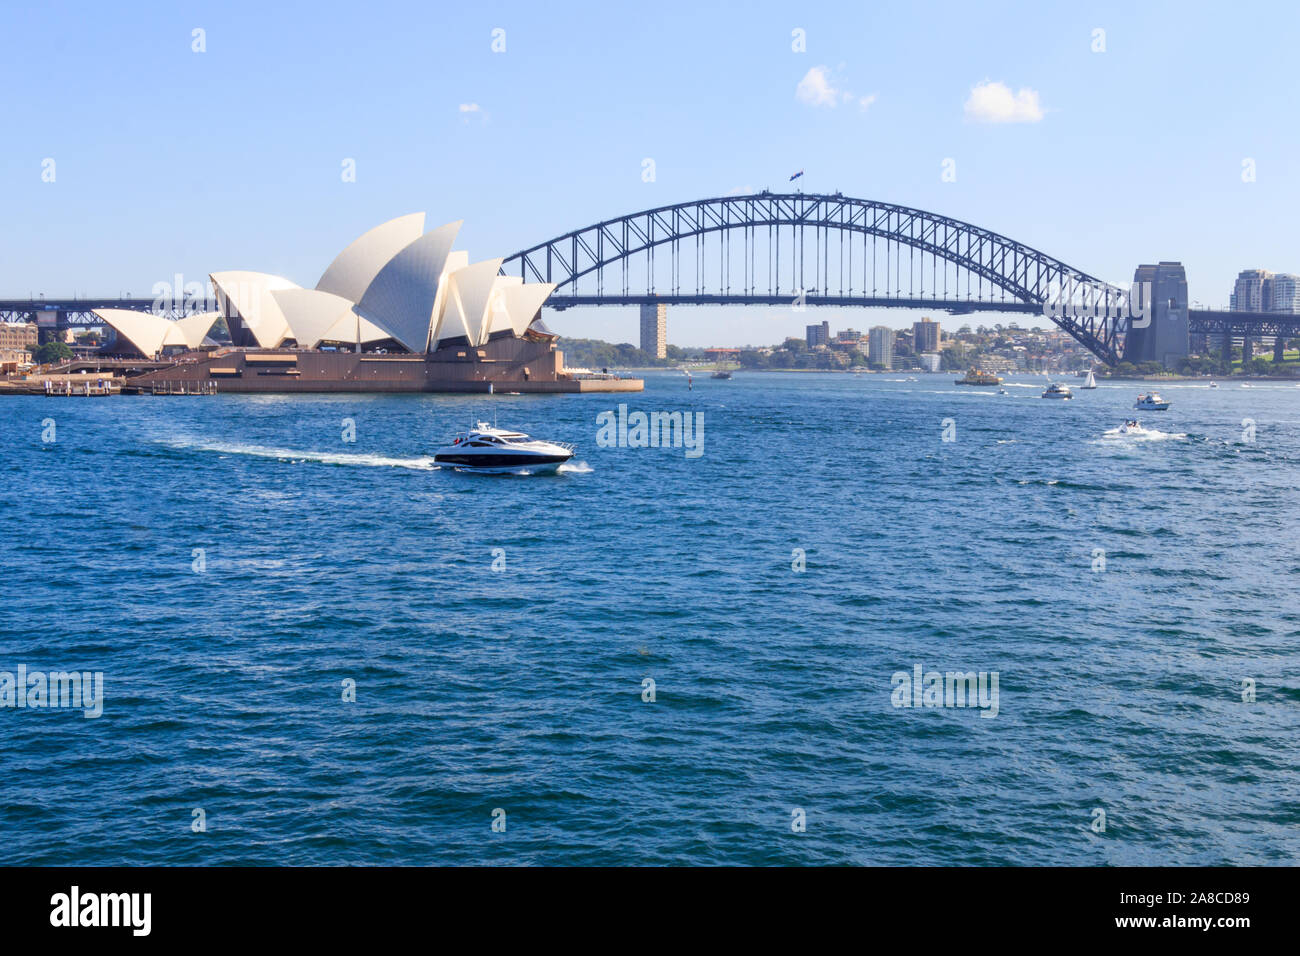 Sydney, Australia - 24 Marzo 2013: vista dell'Opera House di Sydney Harbour. Il Ponte del Porto di Sydney è in background. Foto Stock